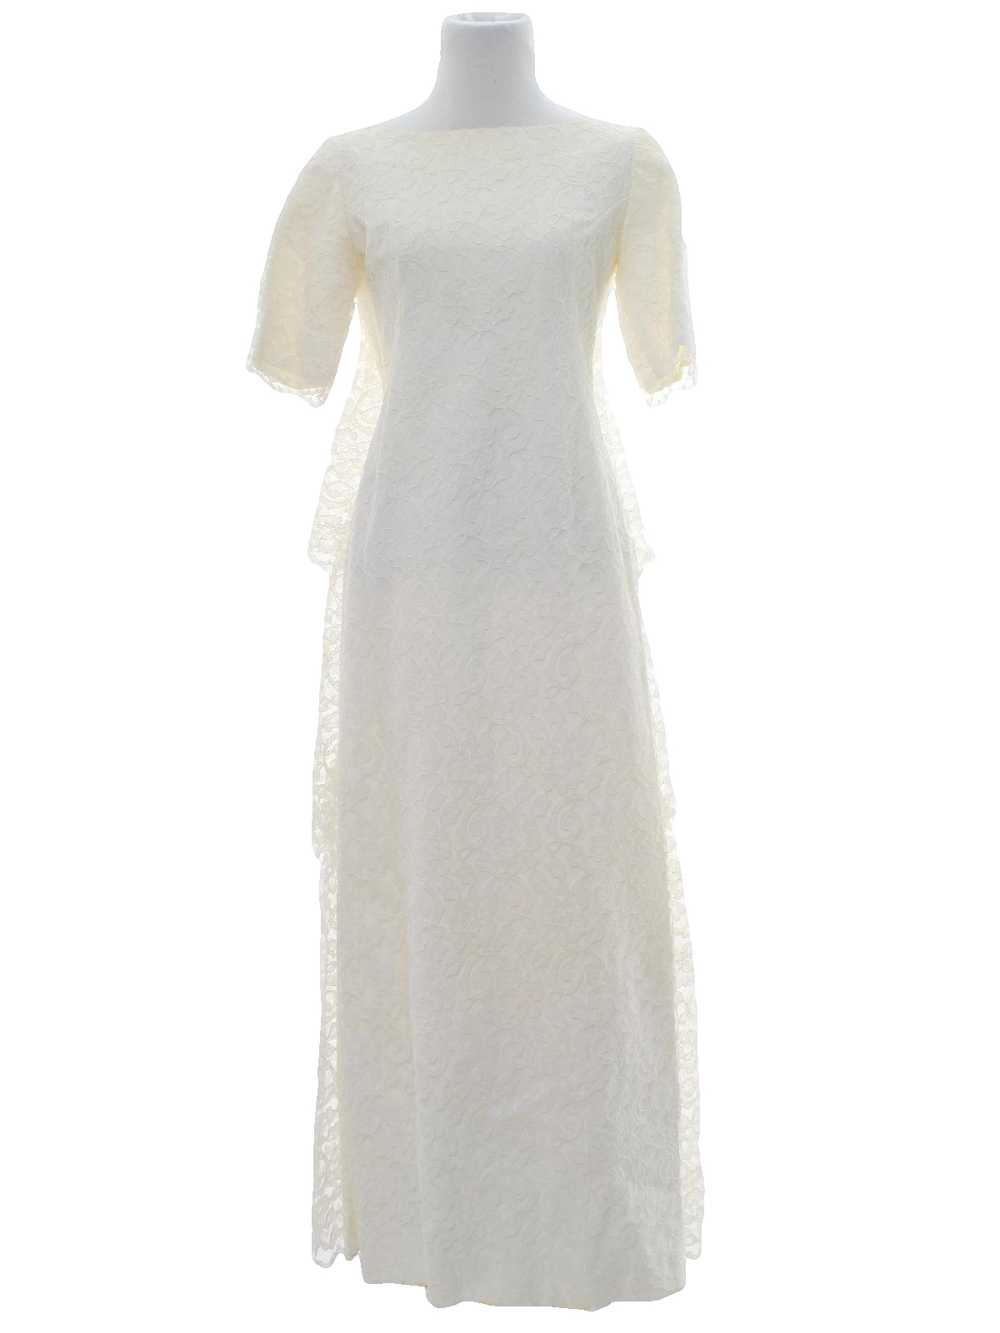 1970's White Wedding Dress - image 1